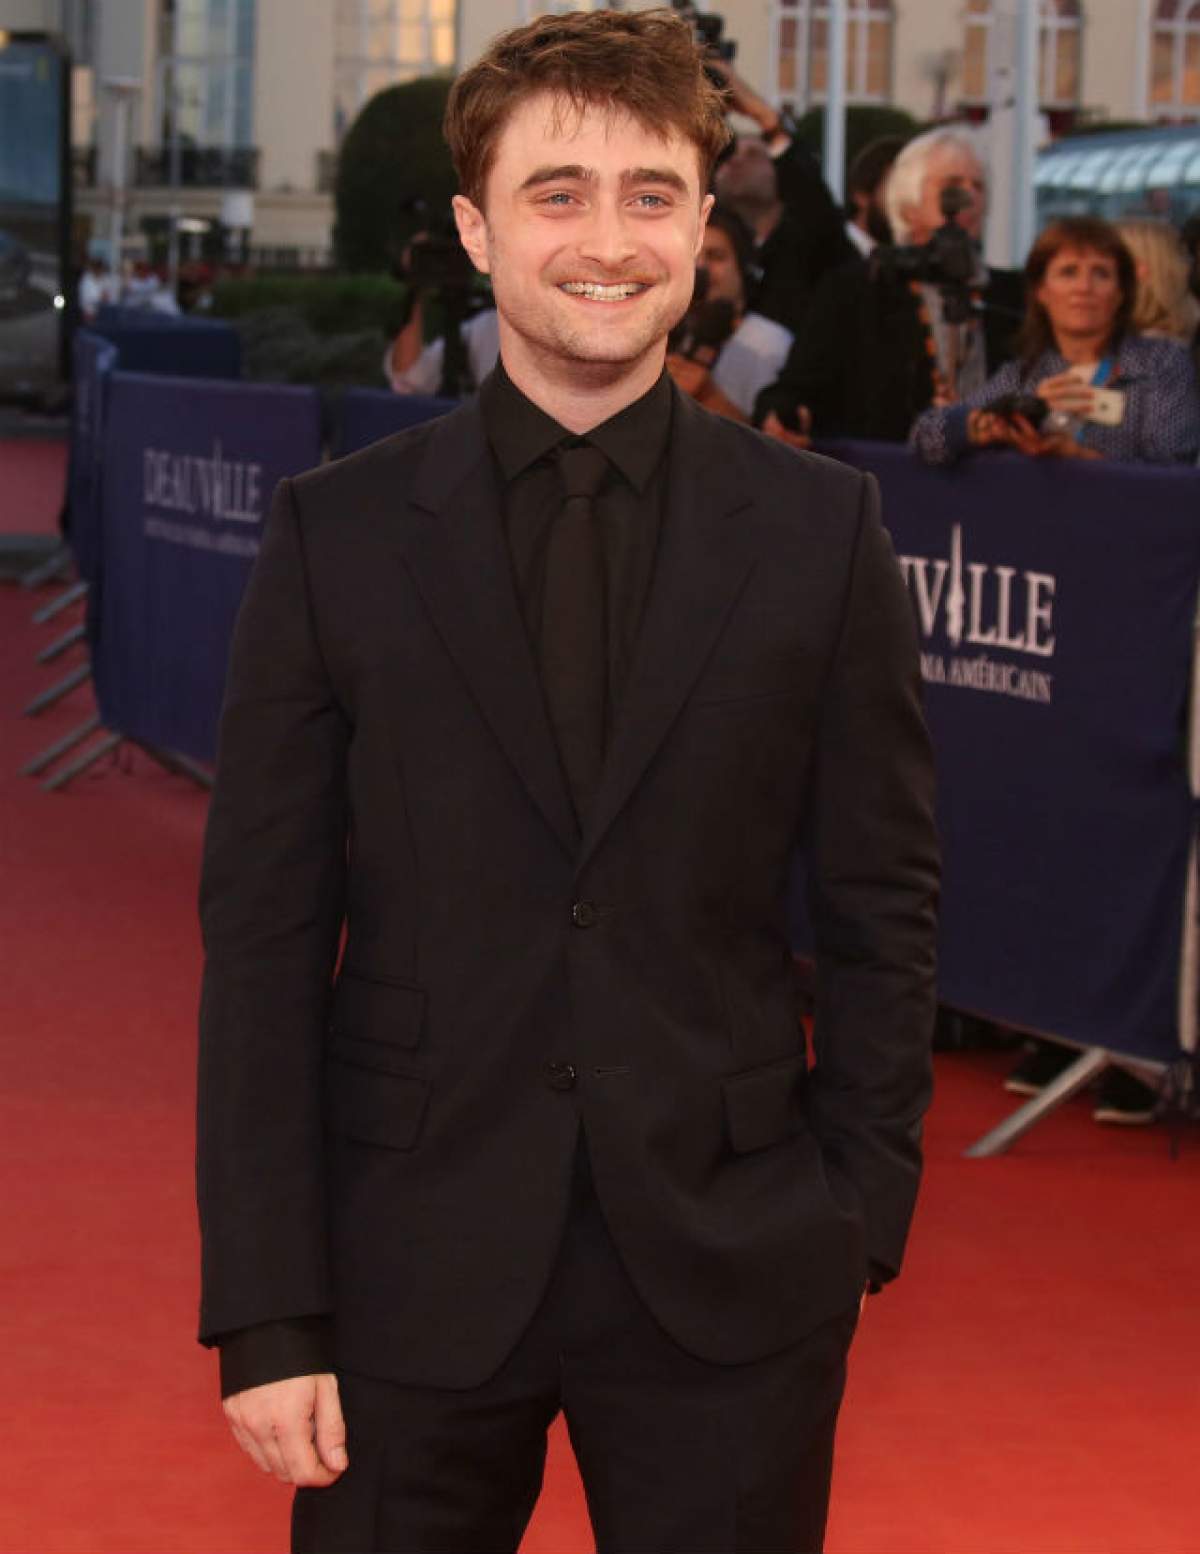 VIDEO / Imagini de colecţie! Fosta reşedinţă a actorului Daniel Radcliffe, desprinsă din filmele de fantezie